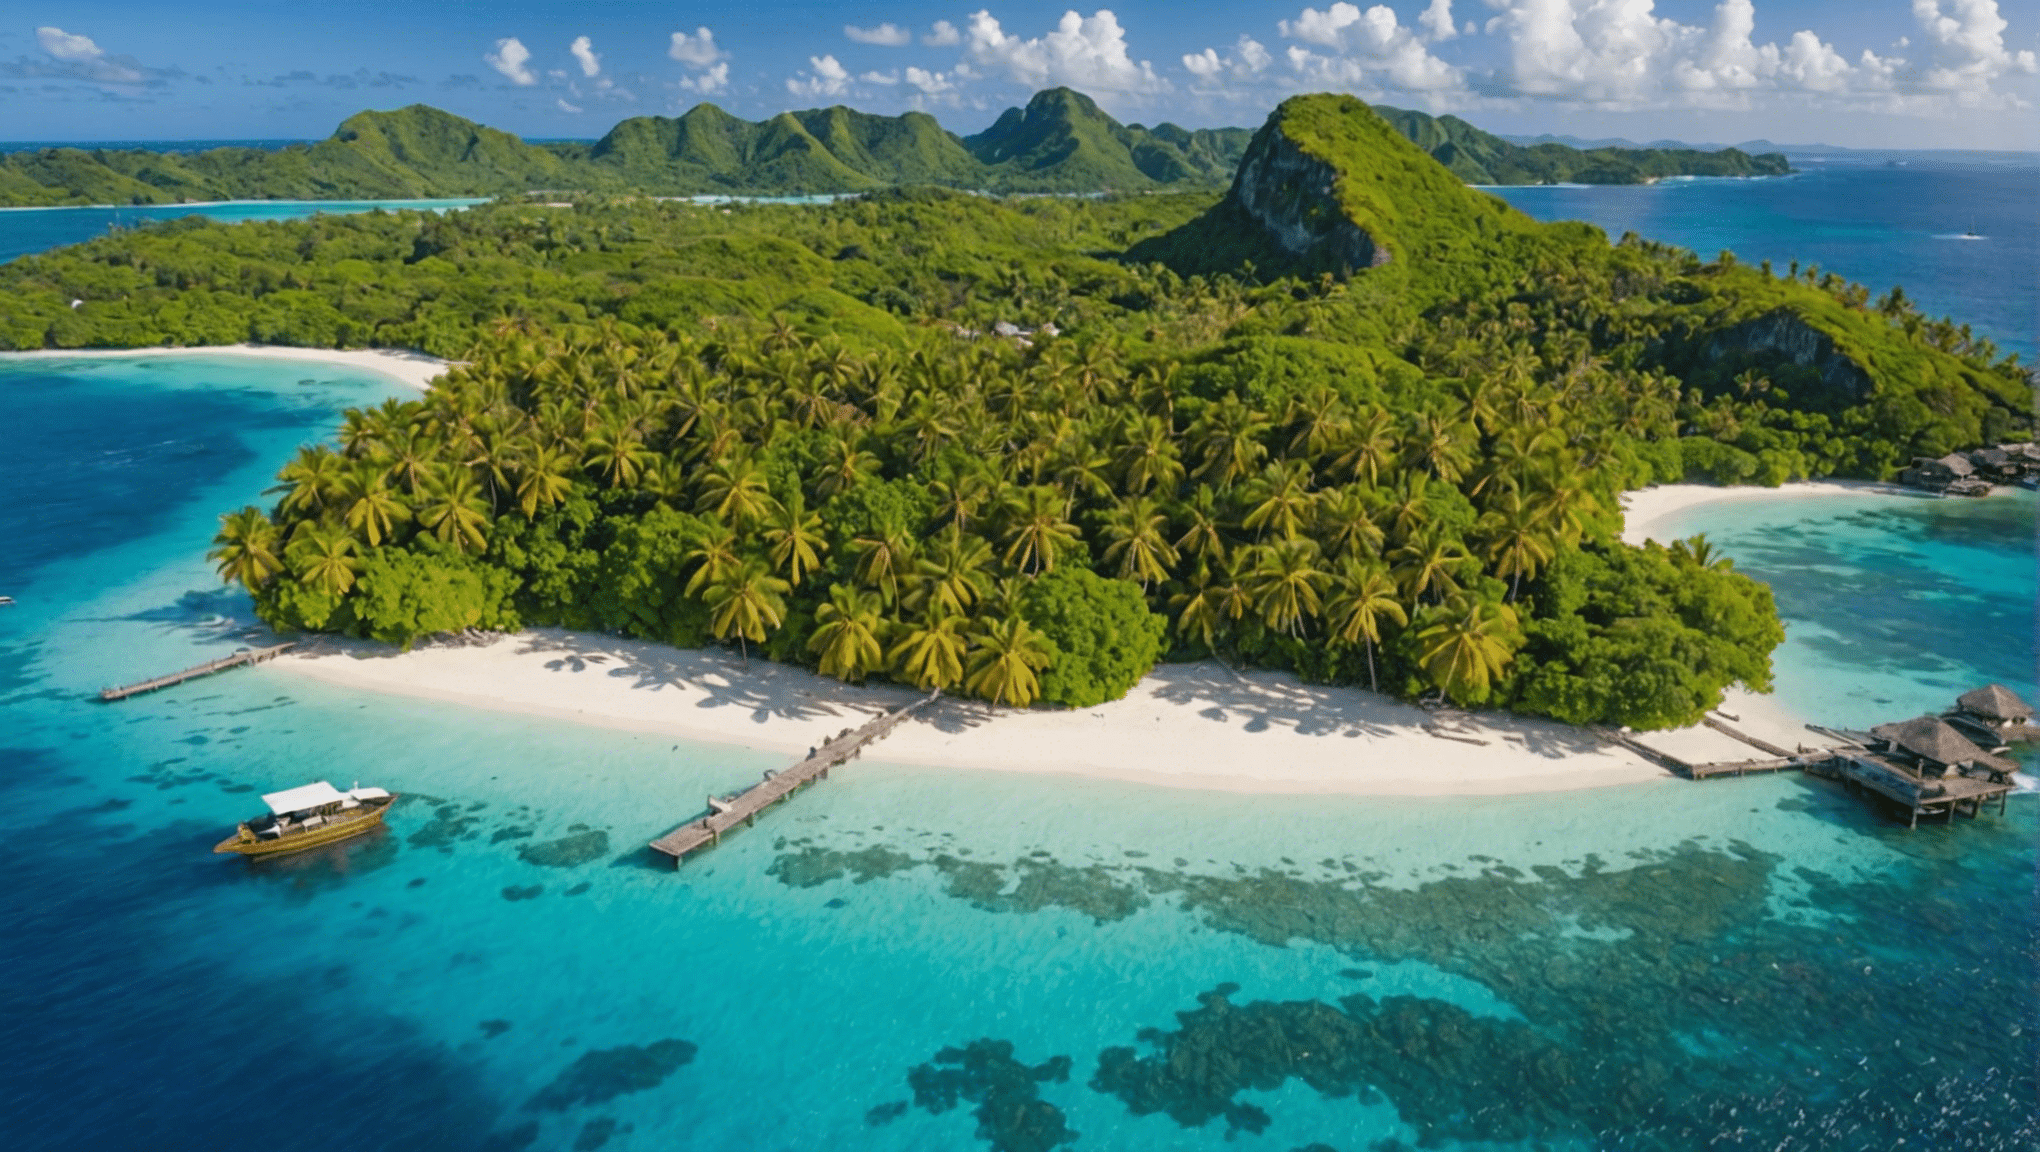 découvrez le top 10 des îles paradisiaques à visiter au moins une fois dans sa vie et laissez-vous emporter par la beauté de ces destinations de rêve.